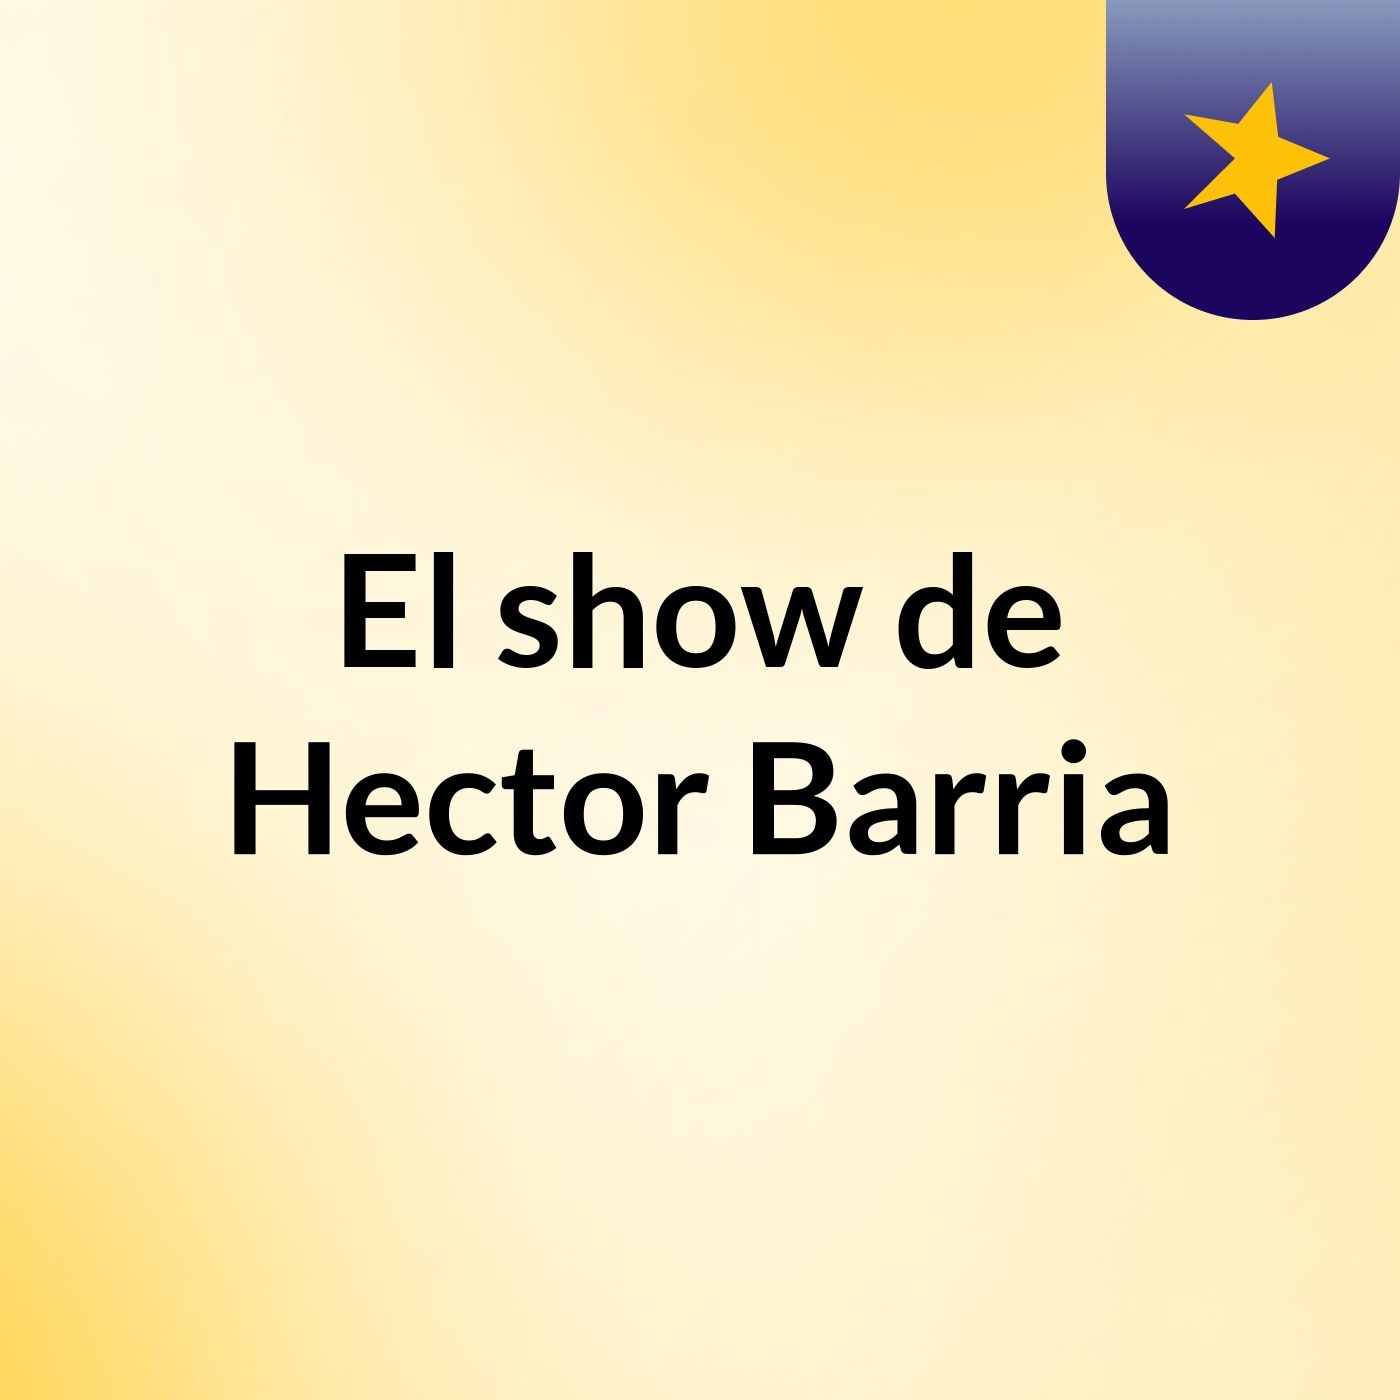 El show de Hector Barria